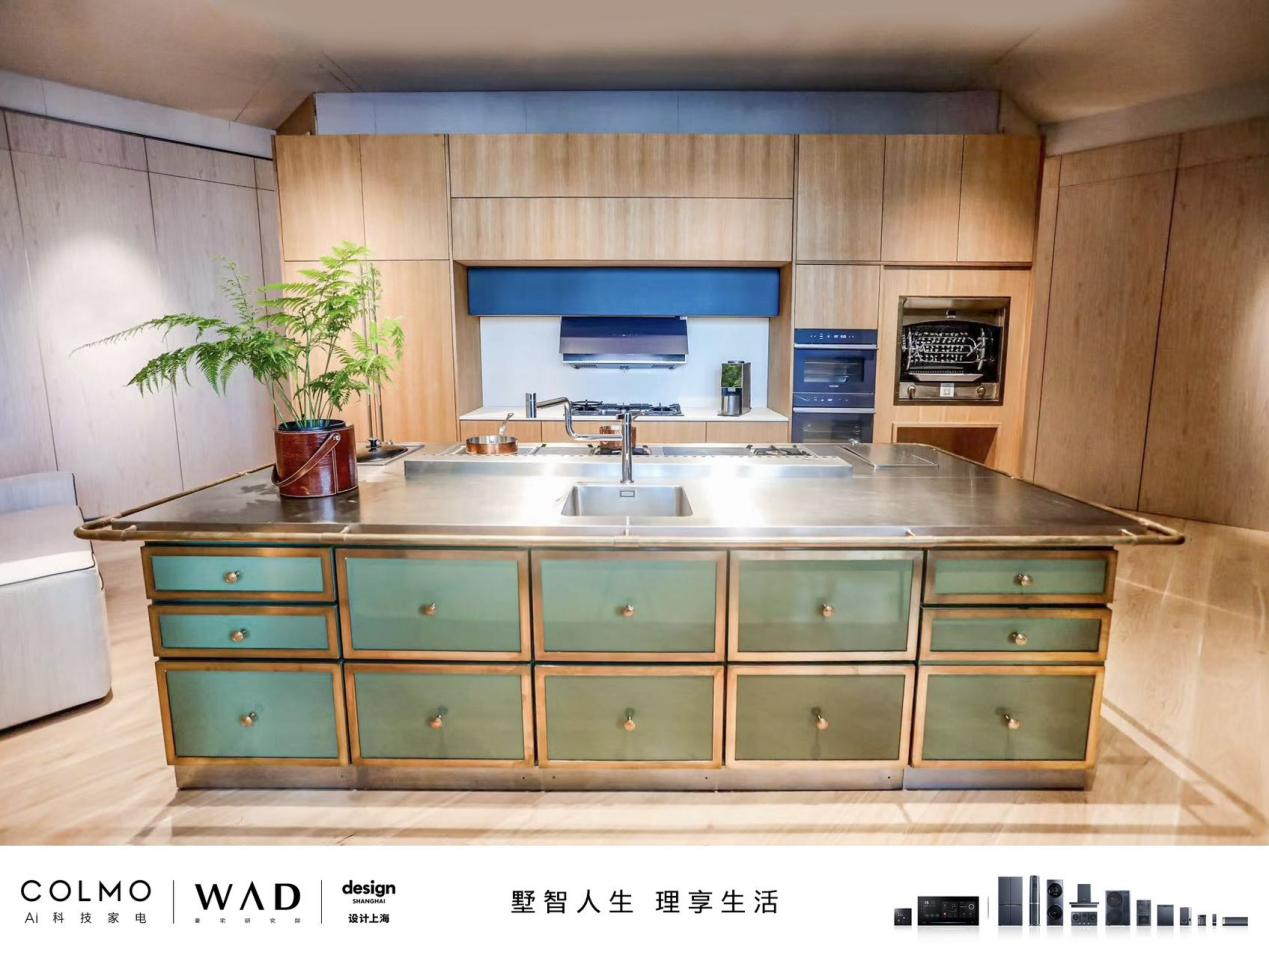 COLMO与WAD于“设计上海”联手打造“豪宅精造空间“，共同诠释野奢风格的理享内涵